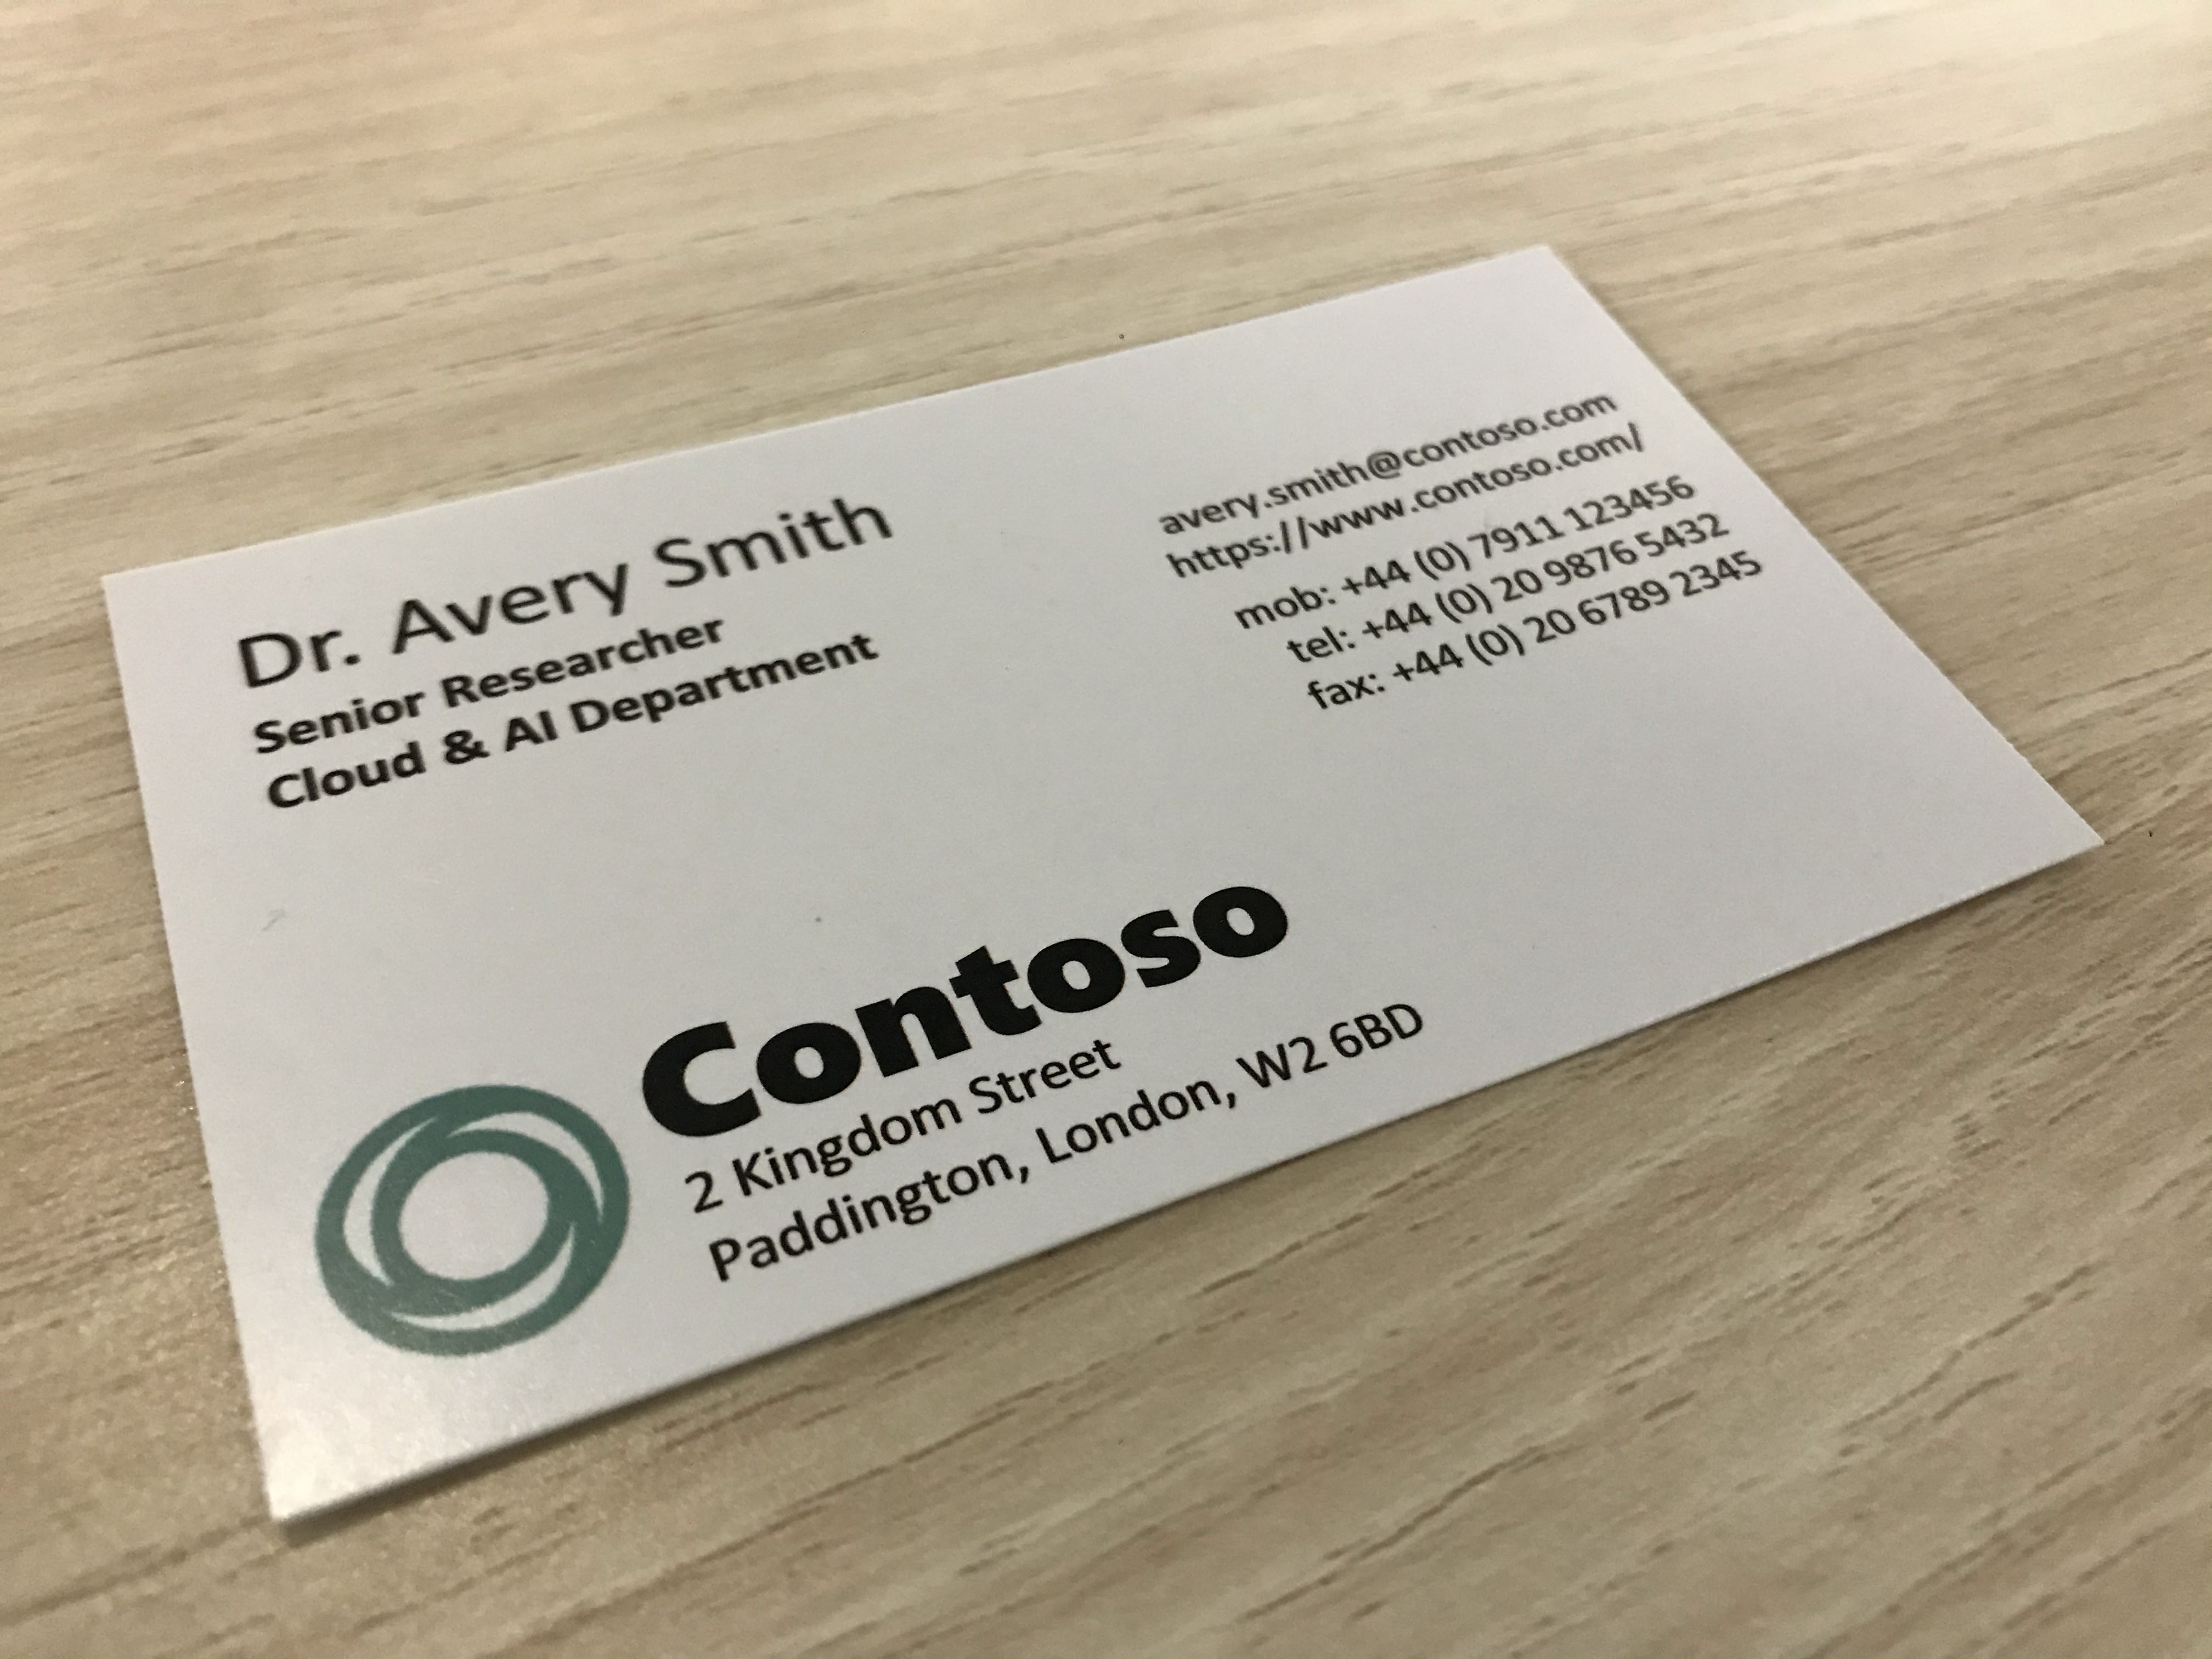 Foto van een visitekaartje van een bedrijf met de naam Contoso.